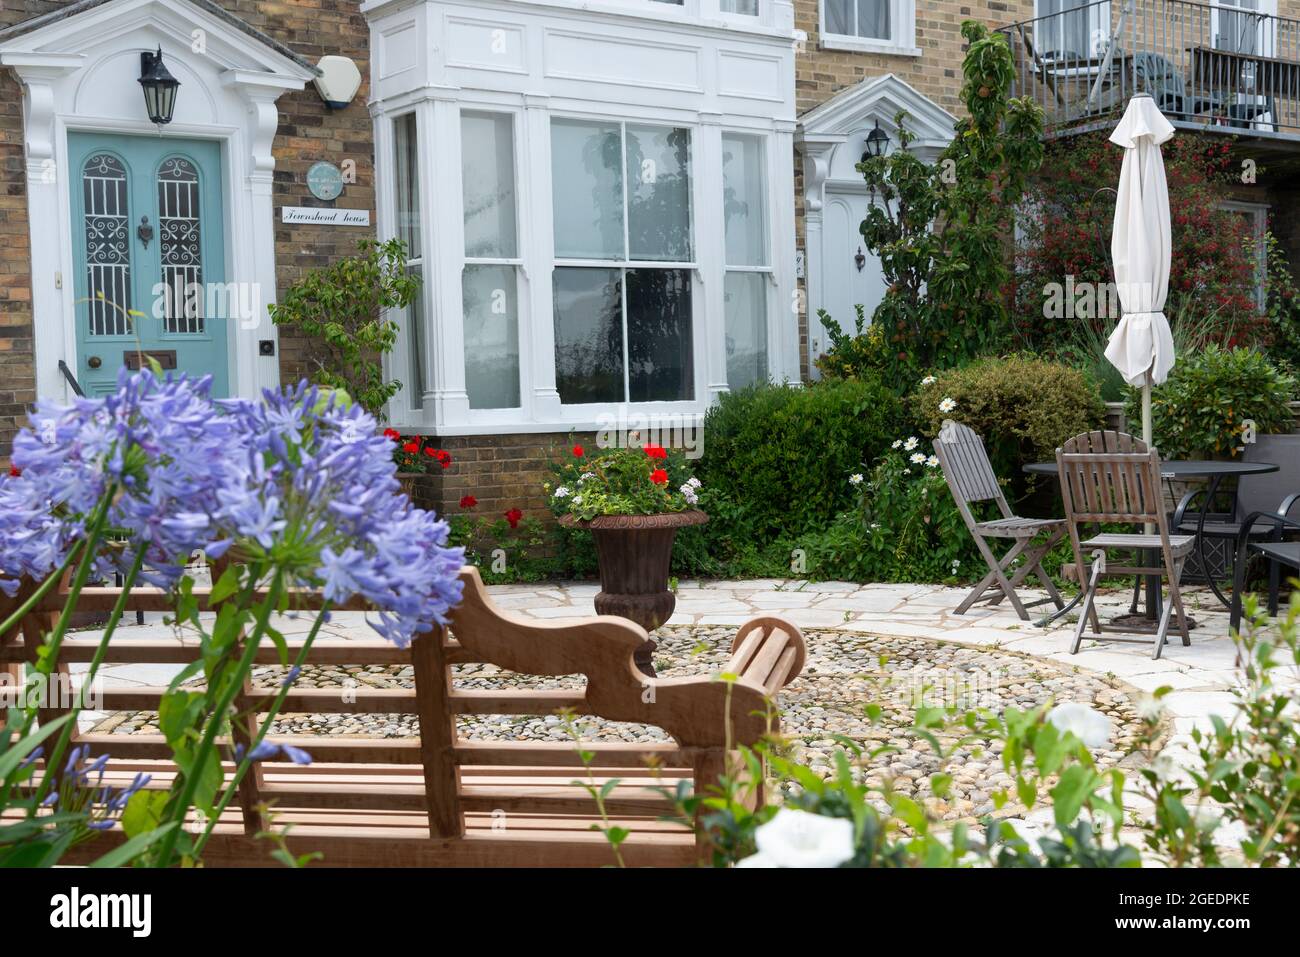 Maison de style géorgien avec jardin côtier ou de bord de mer et agapanthus en fleur sur le front de mer à Cowes, île de Wight, Angleterre, Royaume-Uni Banque D'Images